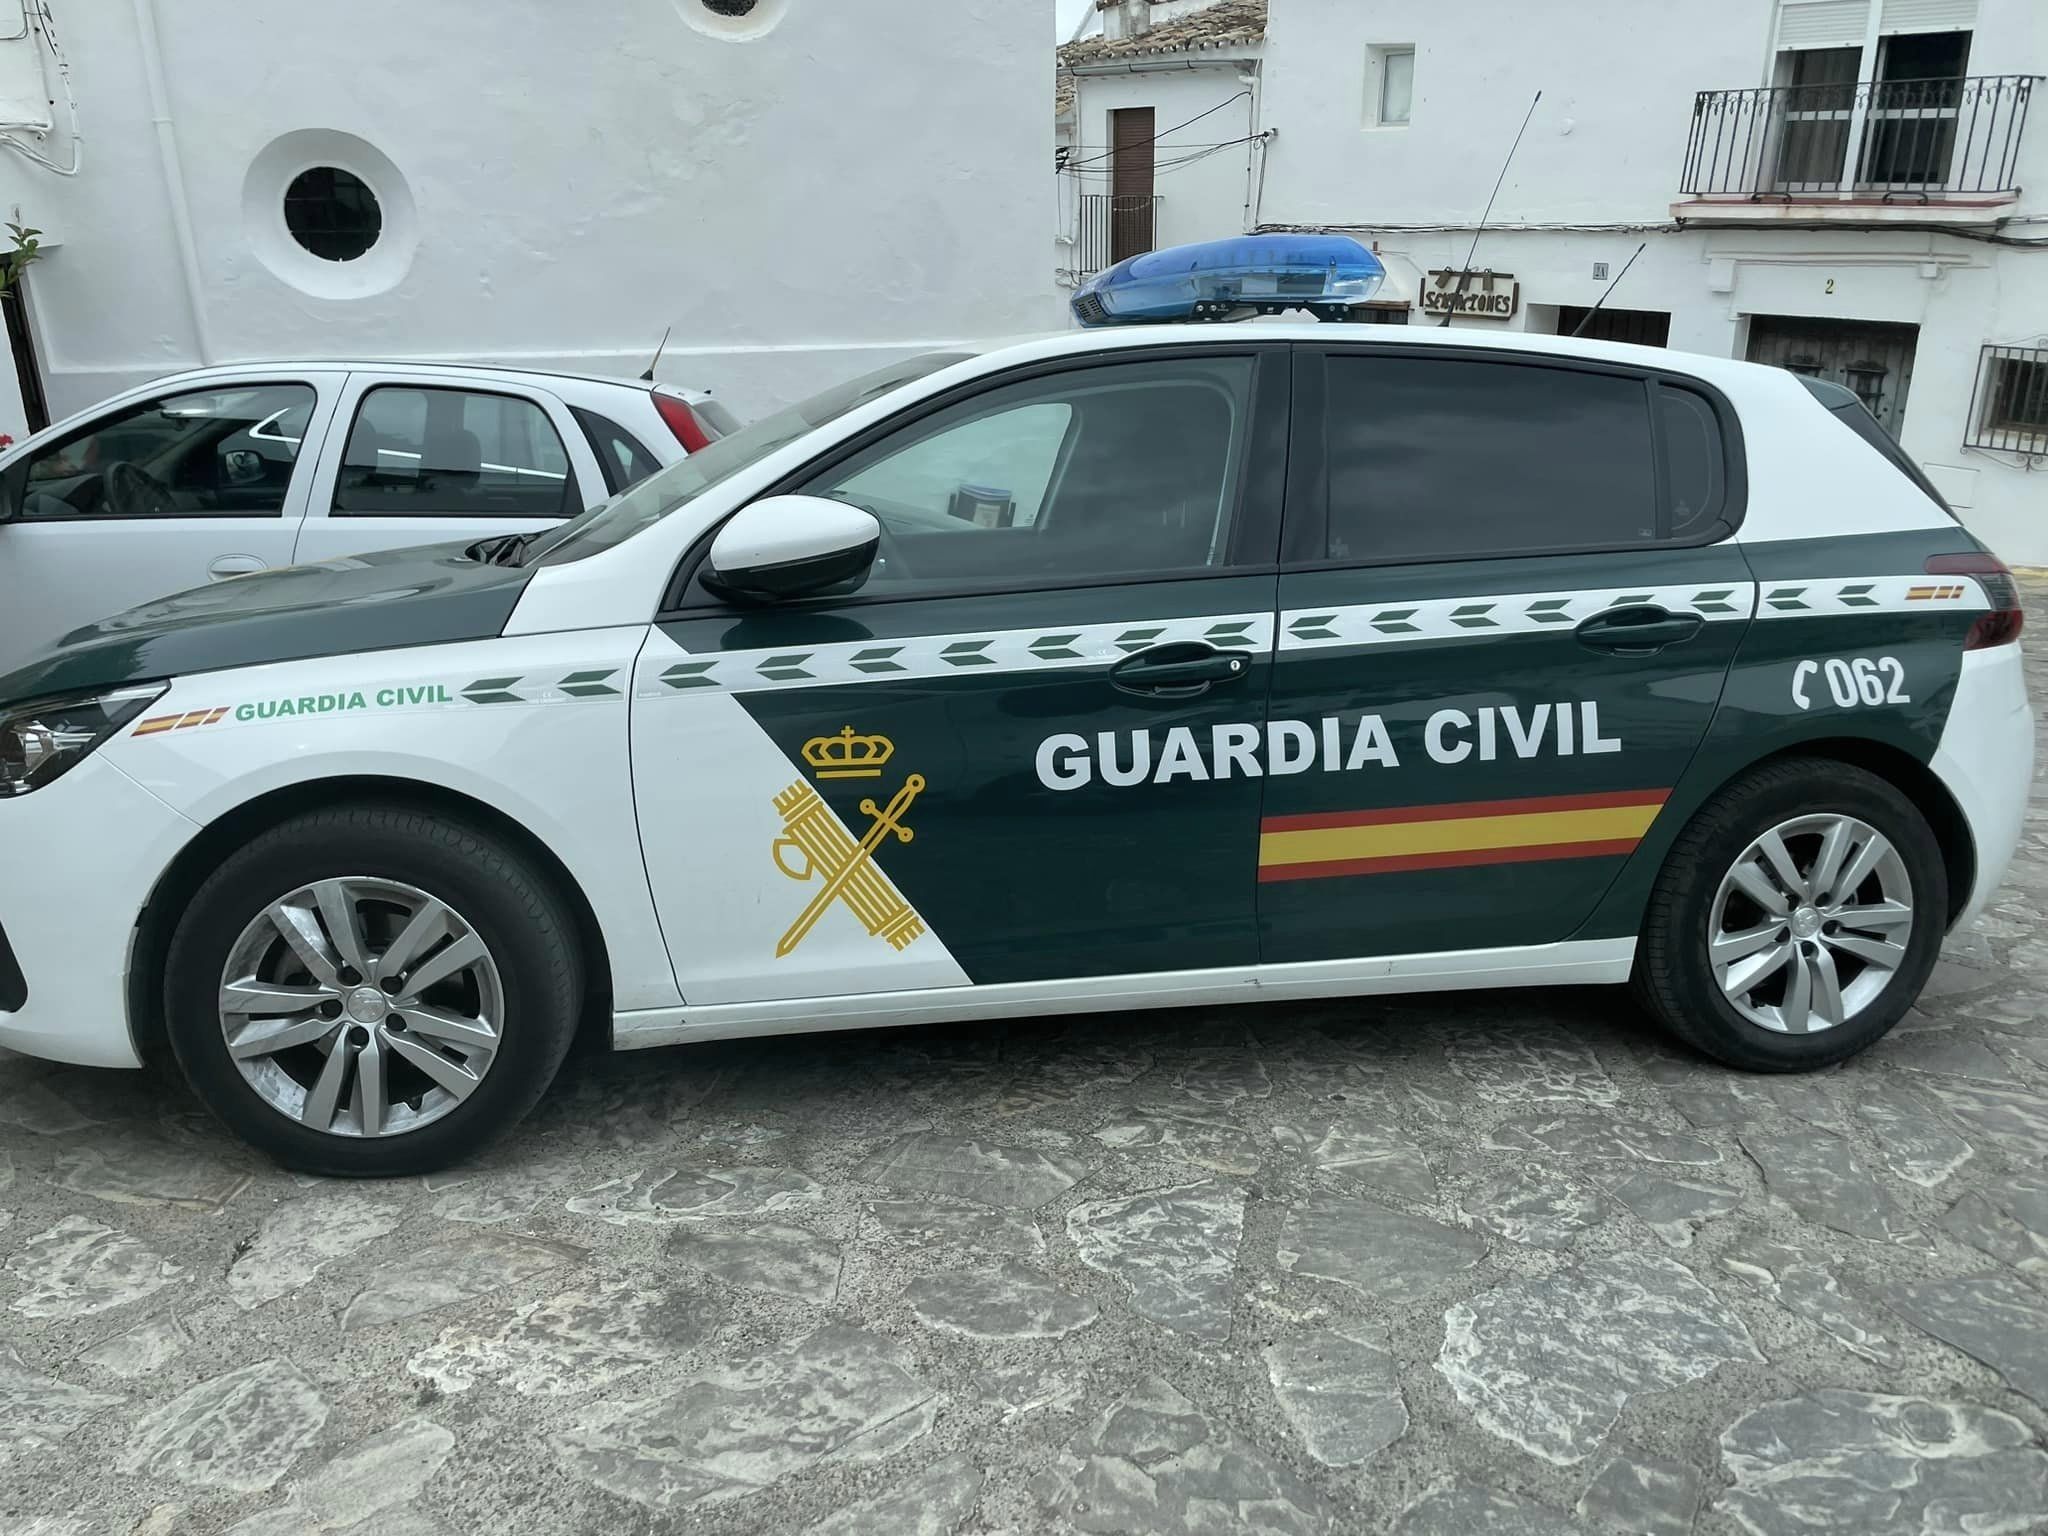 Muere apuñalado un hombre en una residencia de Cádiz: el presunto culpable ha sido detenido